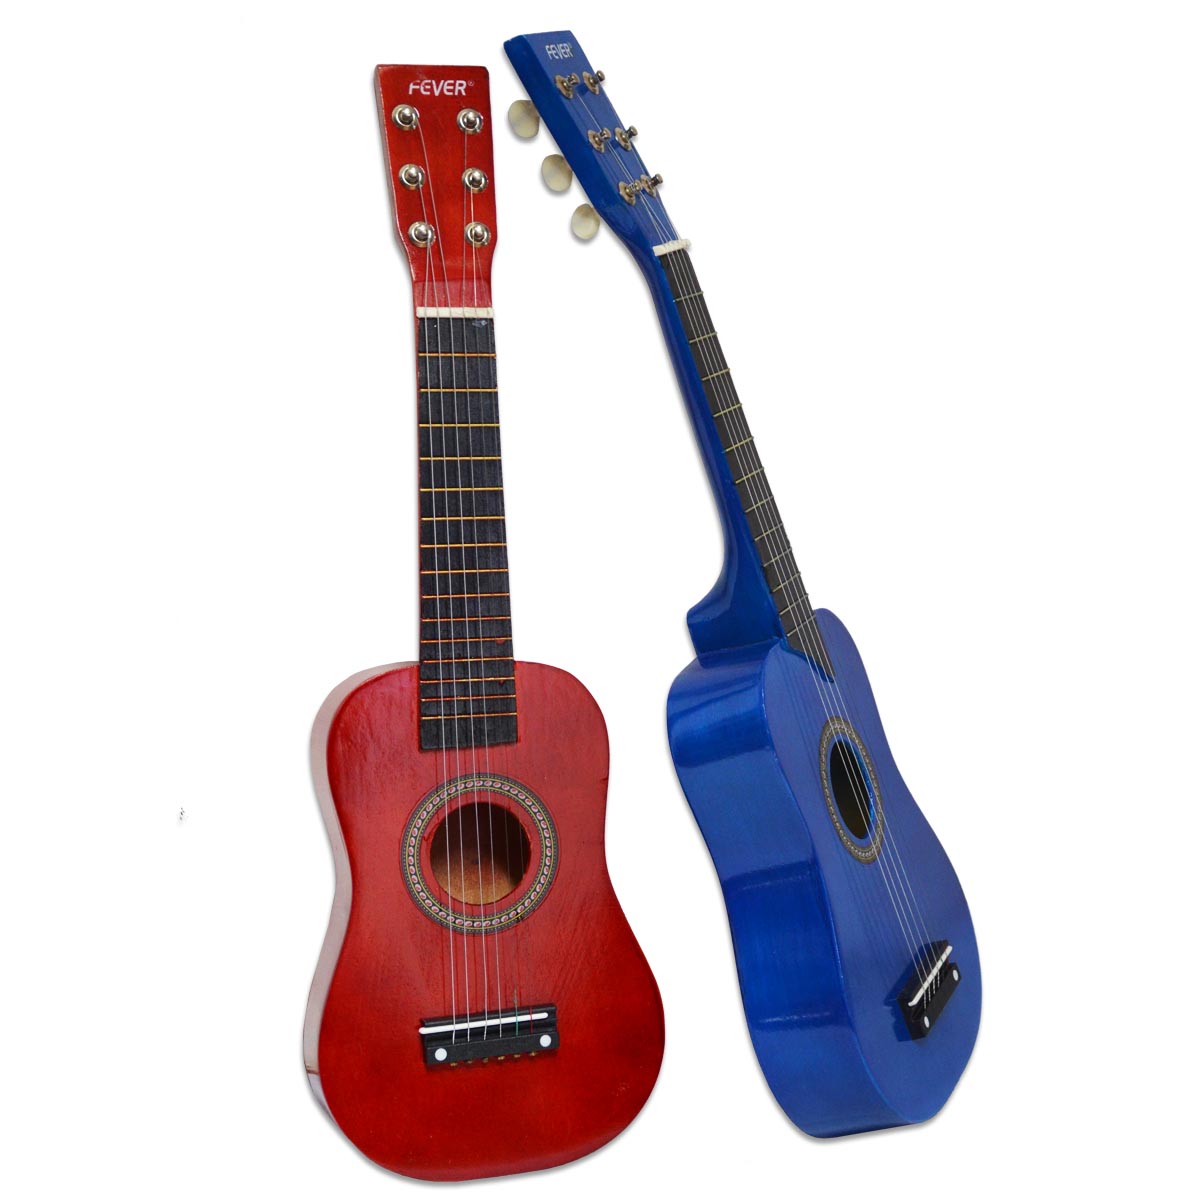 Guitarra Española infantil de juguete de plástico, 57 cm para niños a  partir de 3 años (Color y modelo aleatorio)